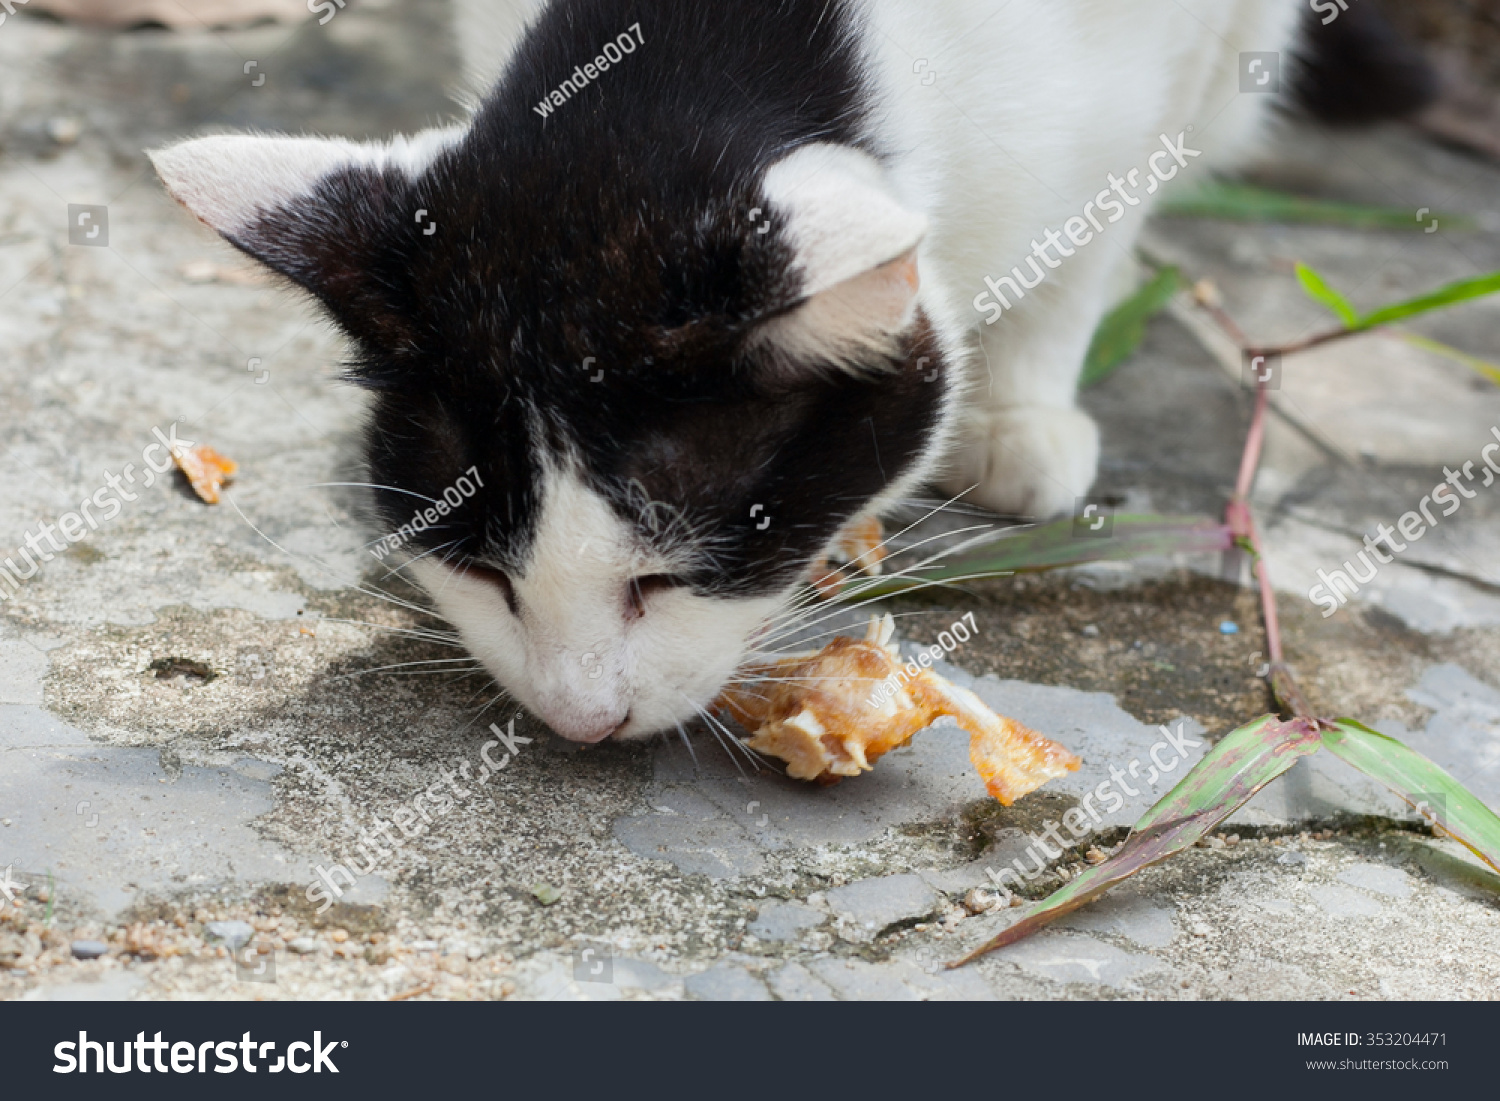 can cats eat fish bones